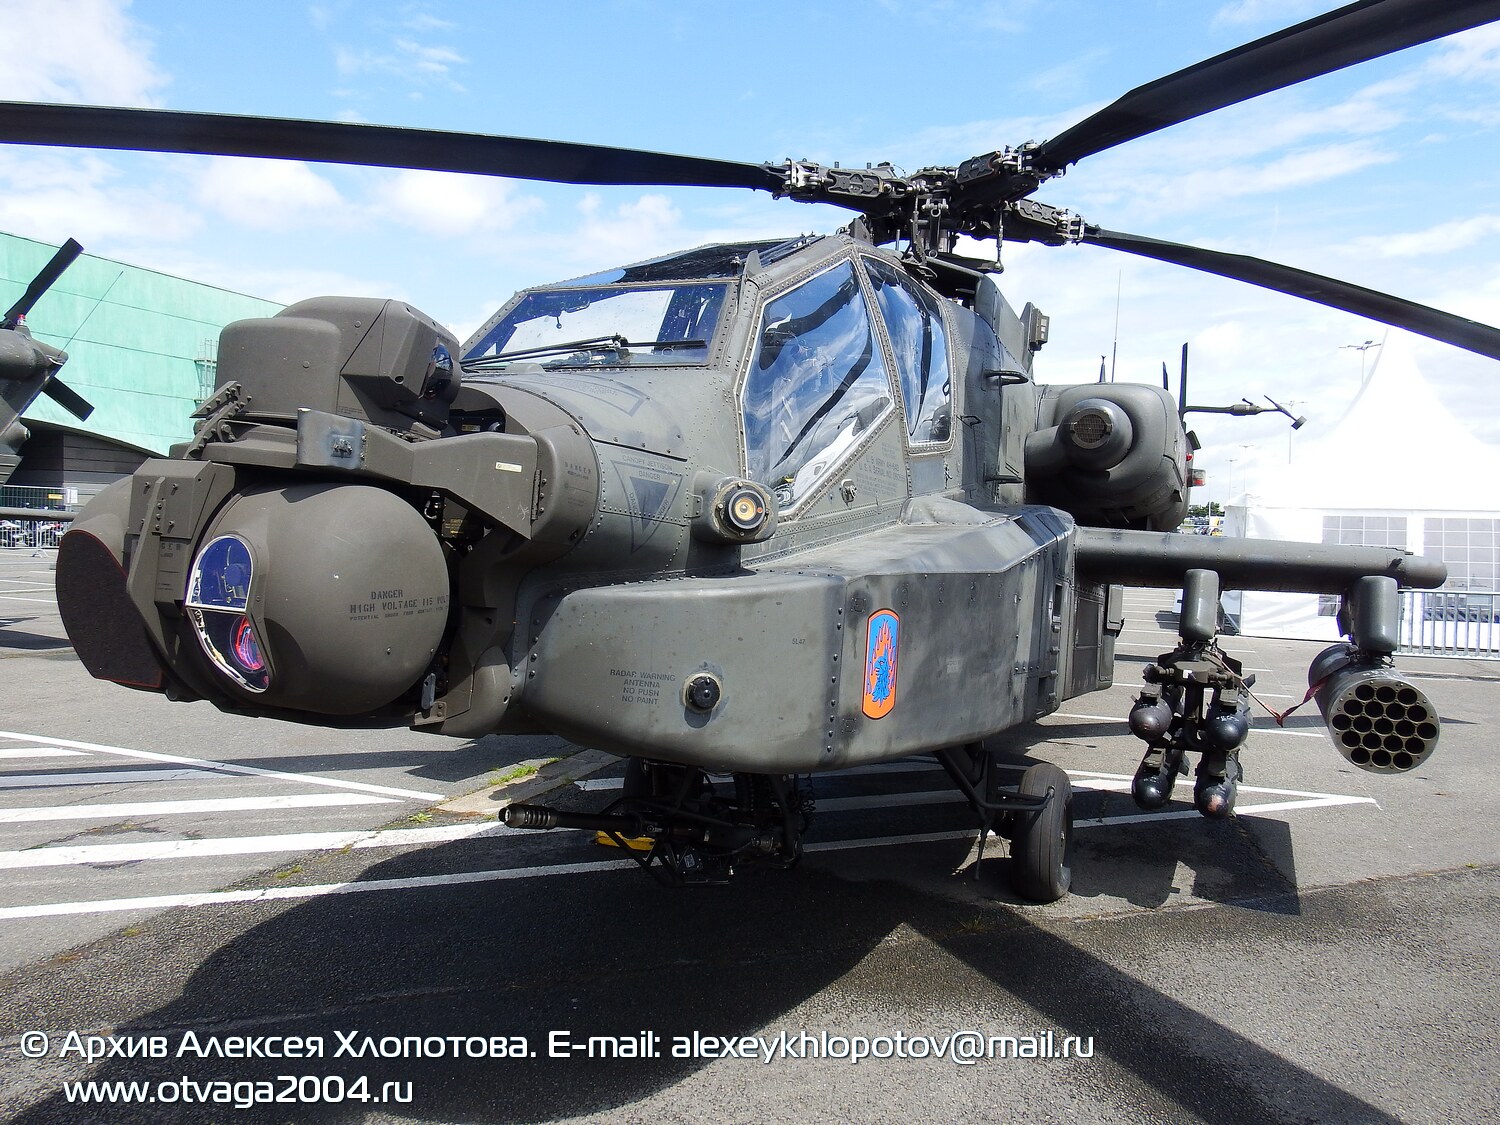 Вертолет AH-64D «Apache Longbow» - фотообзор и фотодетализация